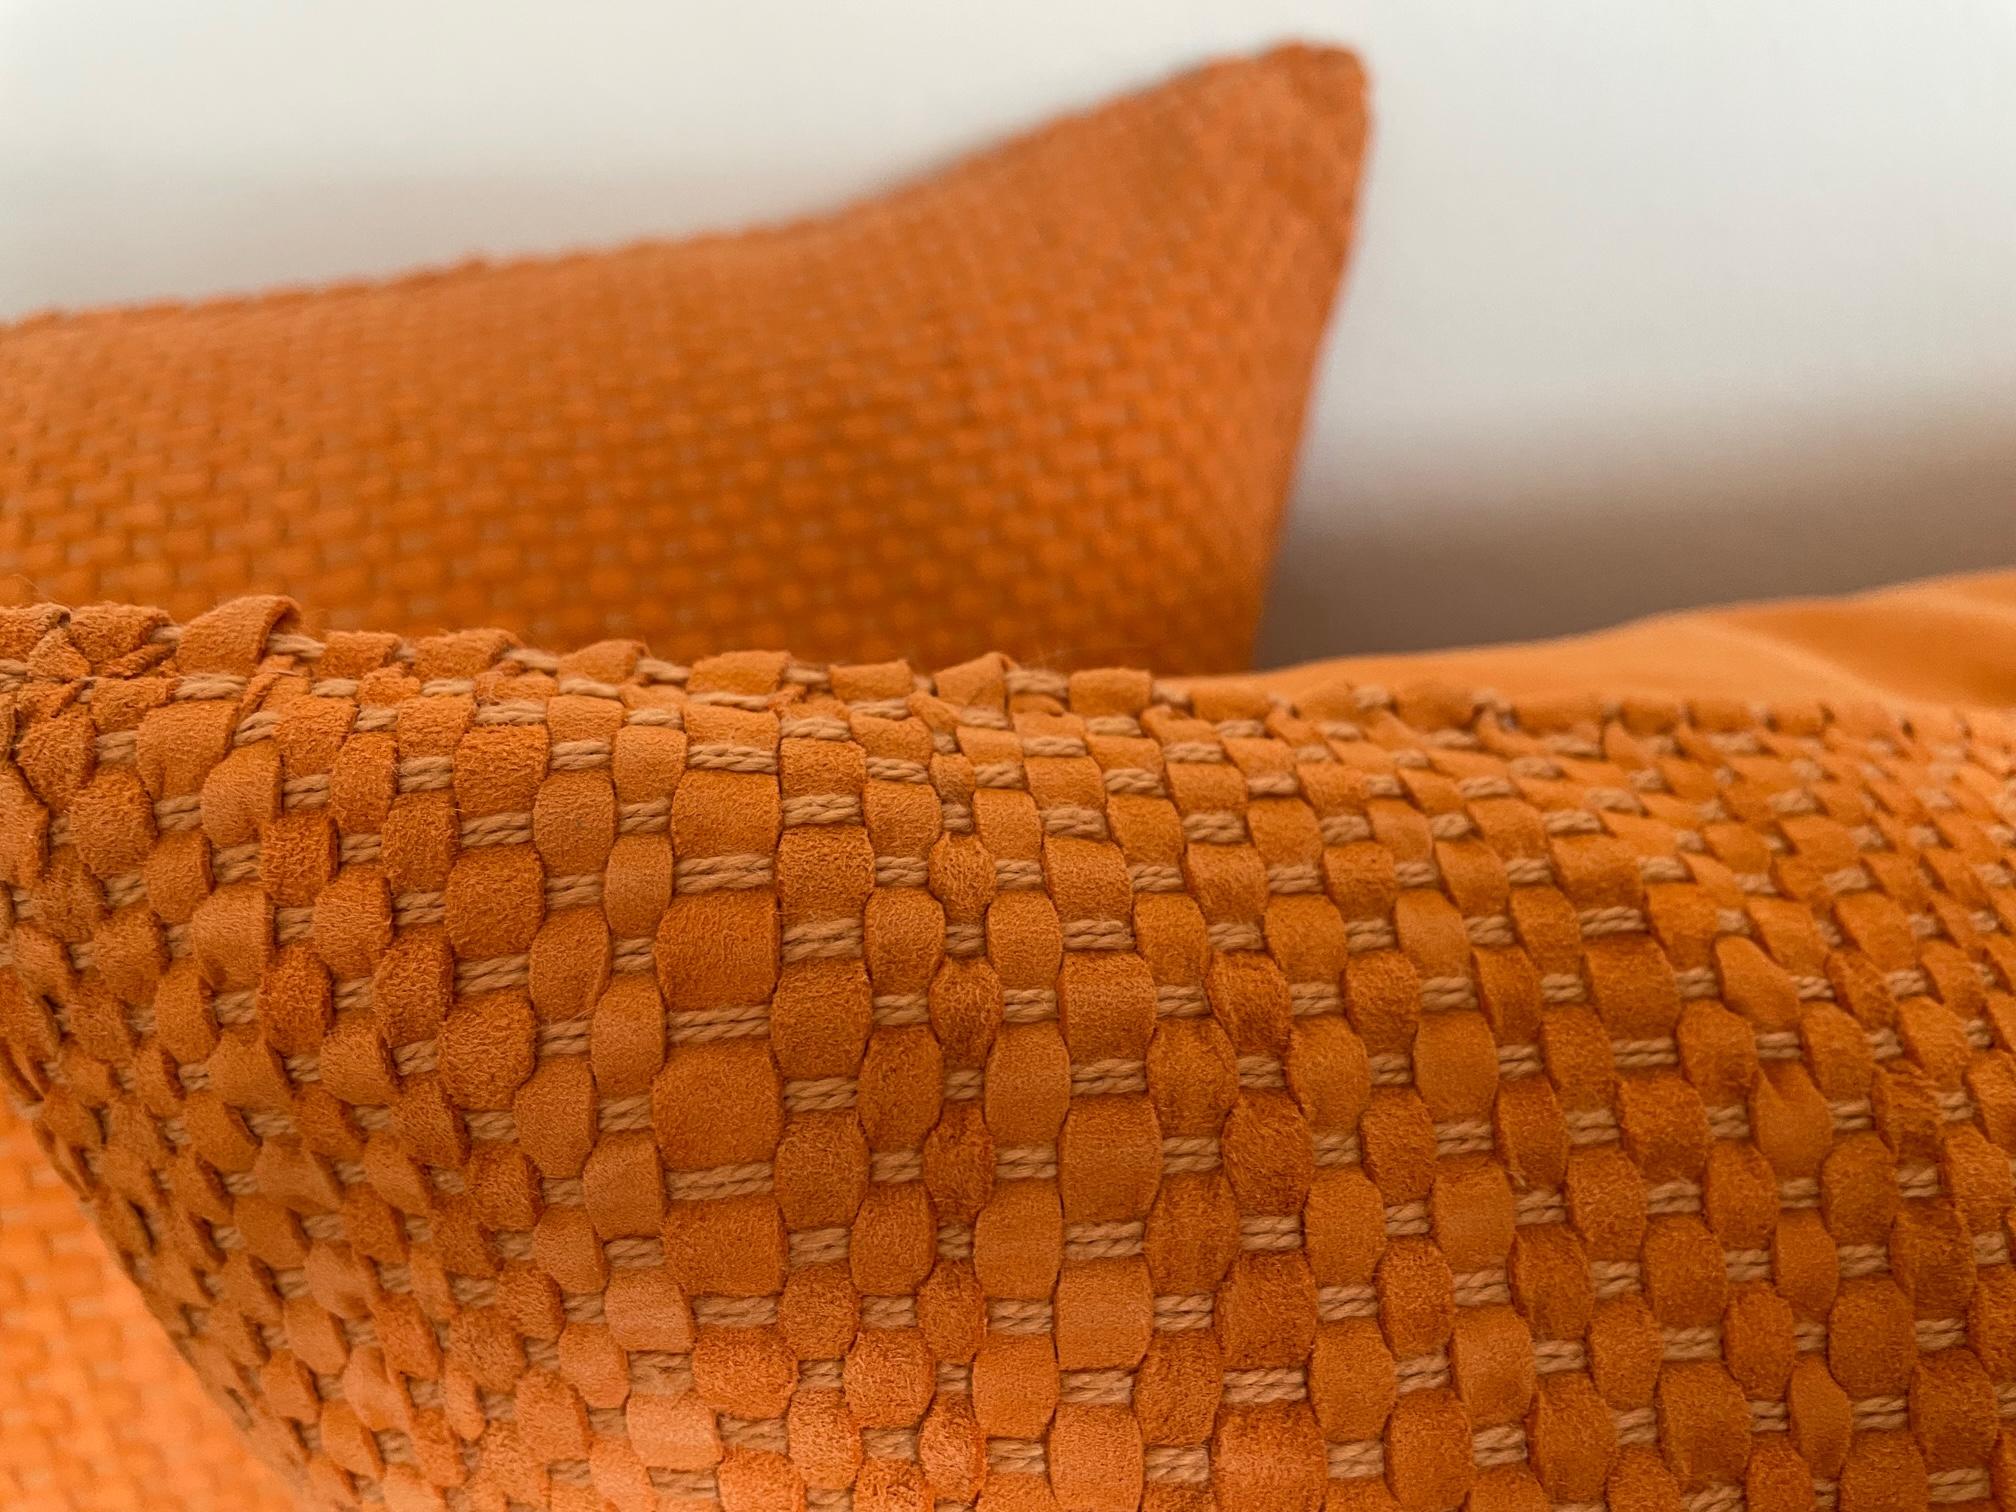 Dieses handgewebte Wildlederkissen in der Farbe Mandarine bringt Farbe in Ihr Interieur. Die Kissen werden in Deutschland mit Wildleder aus Italien handgefertigt und nach unseren Farbwünschen eingefärbt.
Die Rückwand der Kissen ist ebenfalls aus